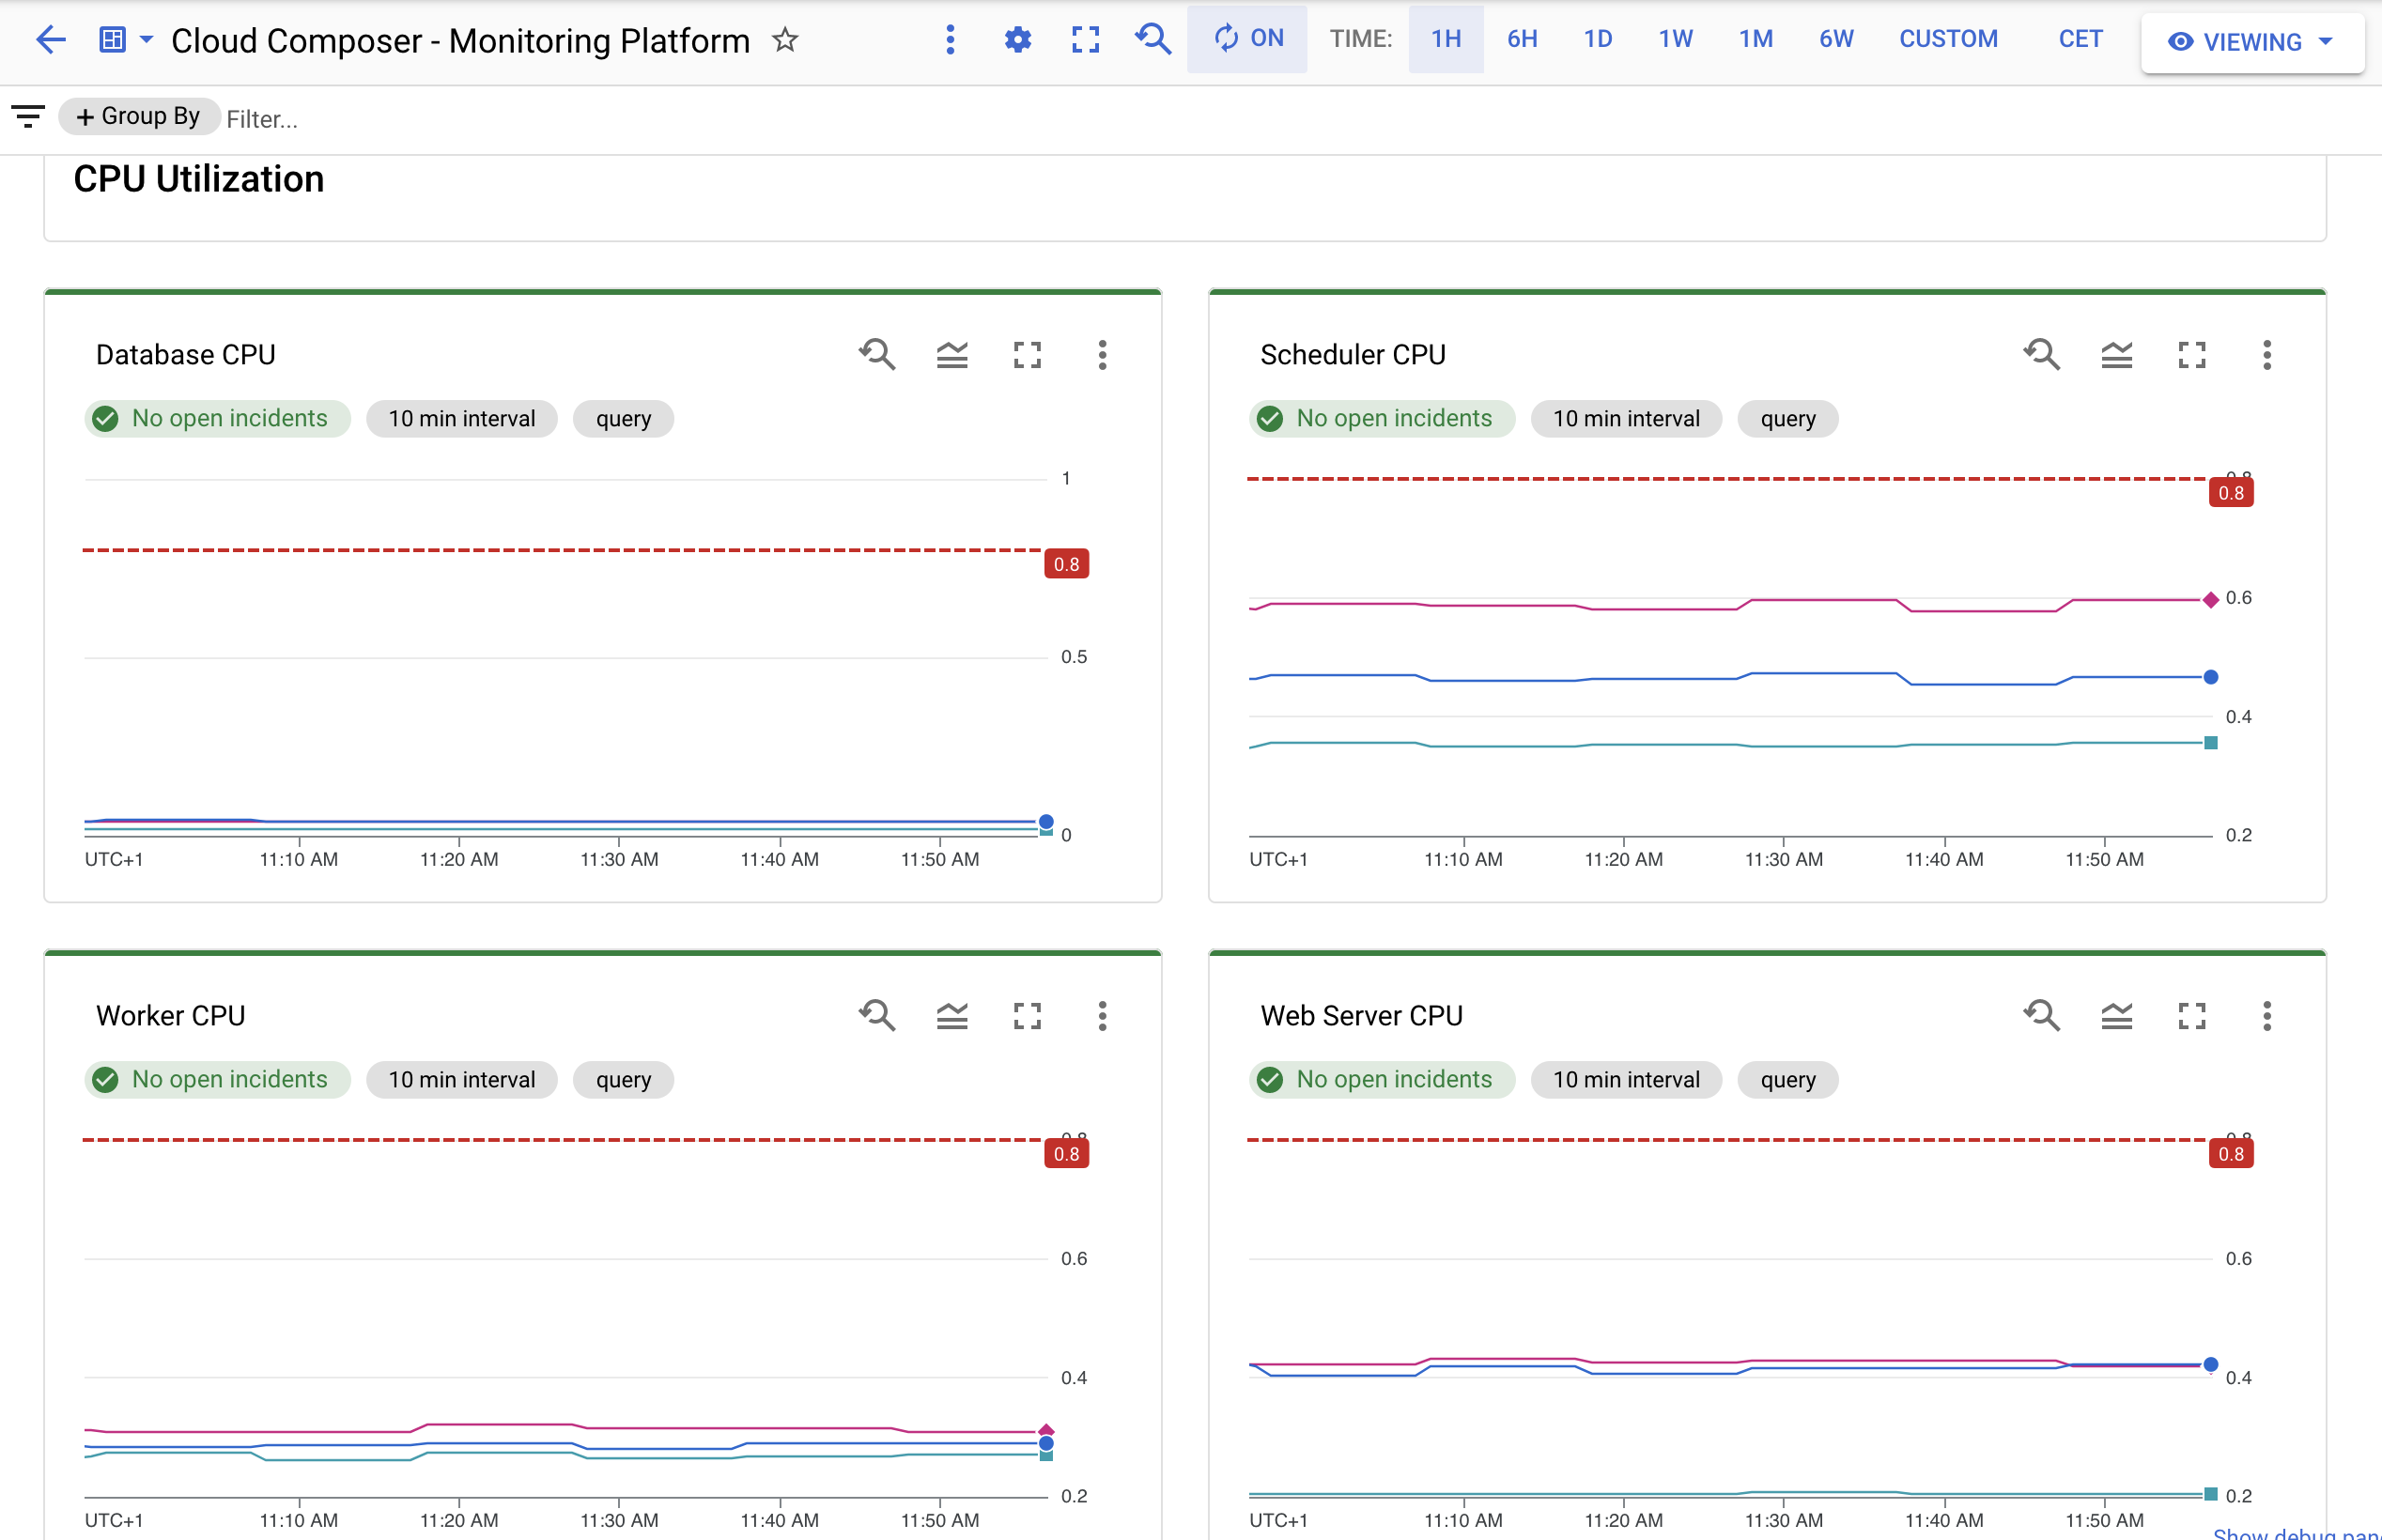 Screenshot des Monitoring-Dashboards mit Datenbank-CPU, Planer-CPU, Worker-CPU und Webserver-CPU